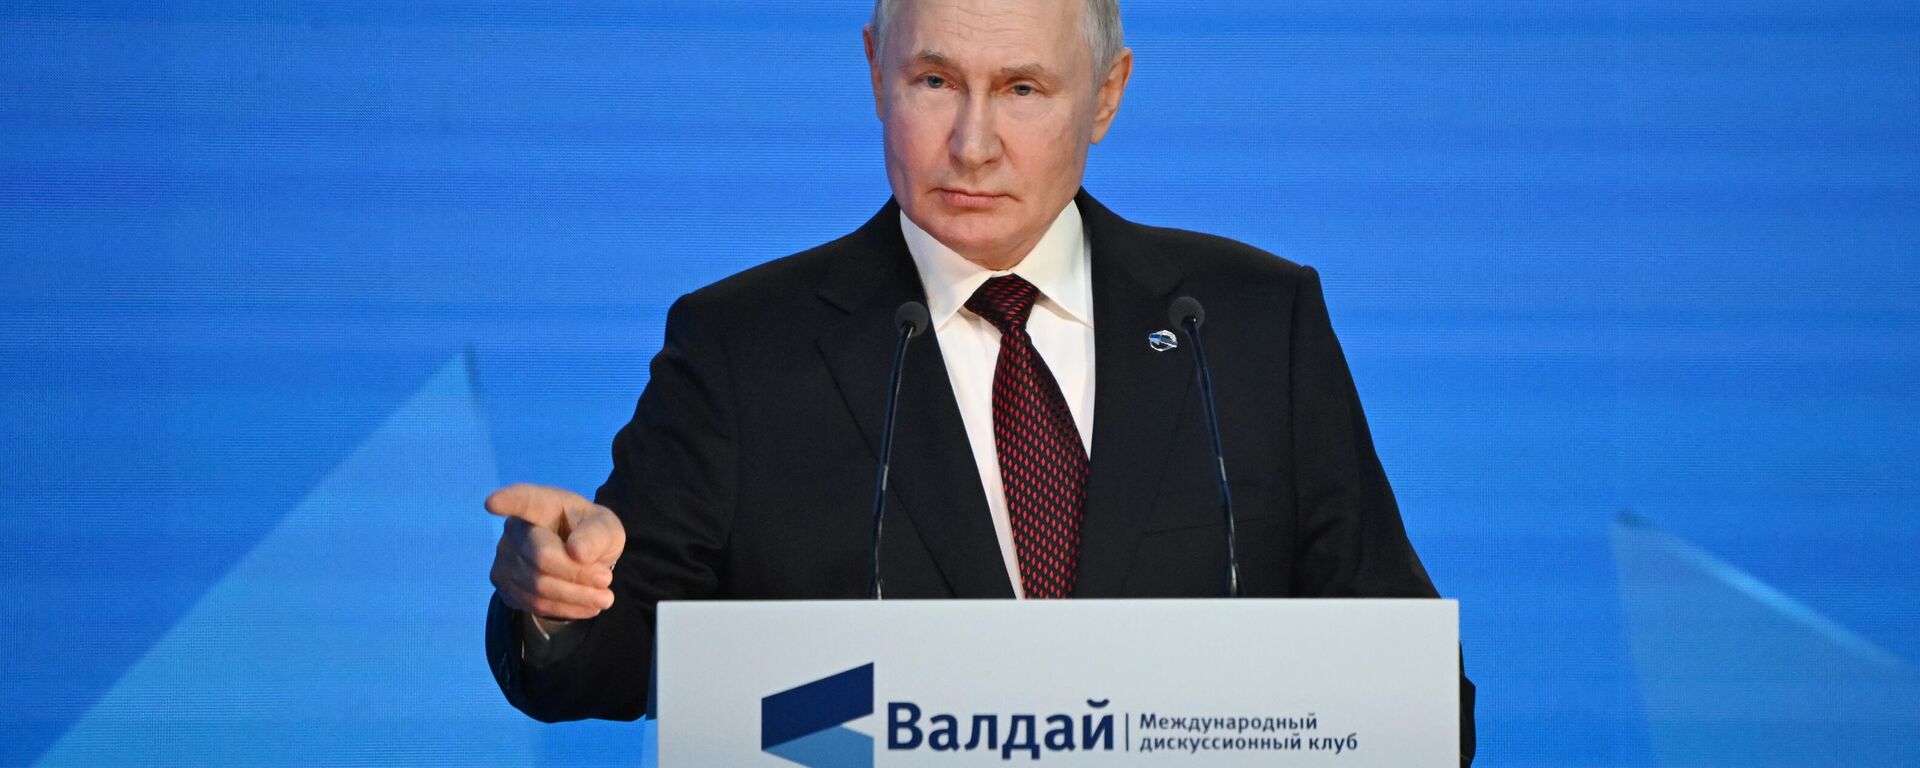 O presidente russo, Vladimir Putin, durante discurso no evento Clube Valdai de Discussões Internacionais. Sochi, Rússia, 5 de outubro de 2023 - Sputnik Brasil, 1920, 06.10.2023